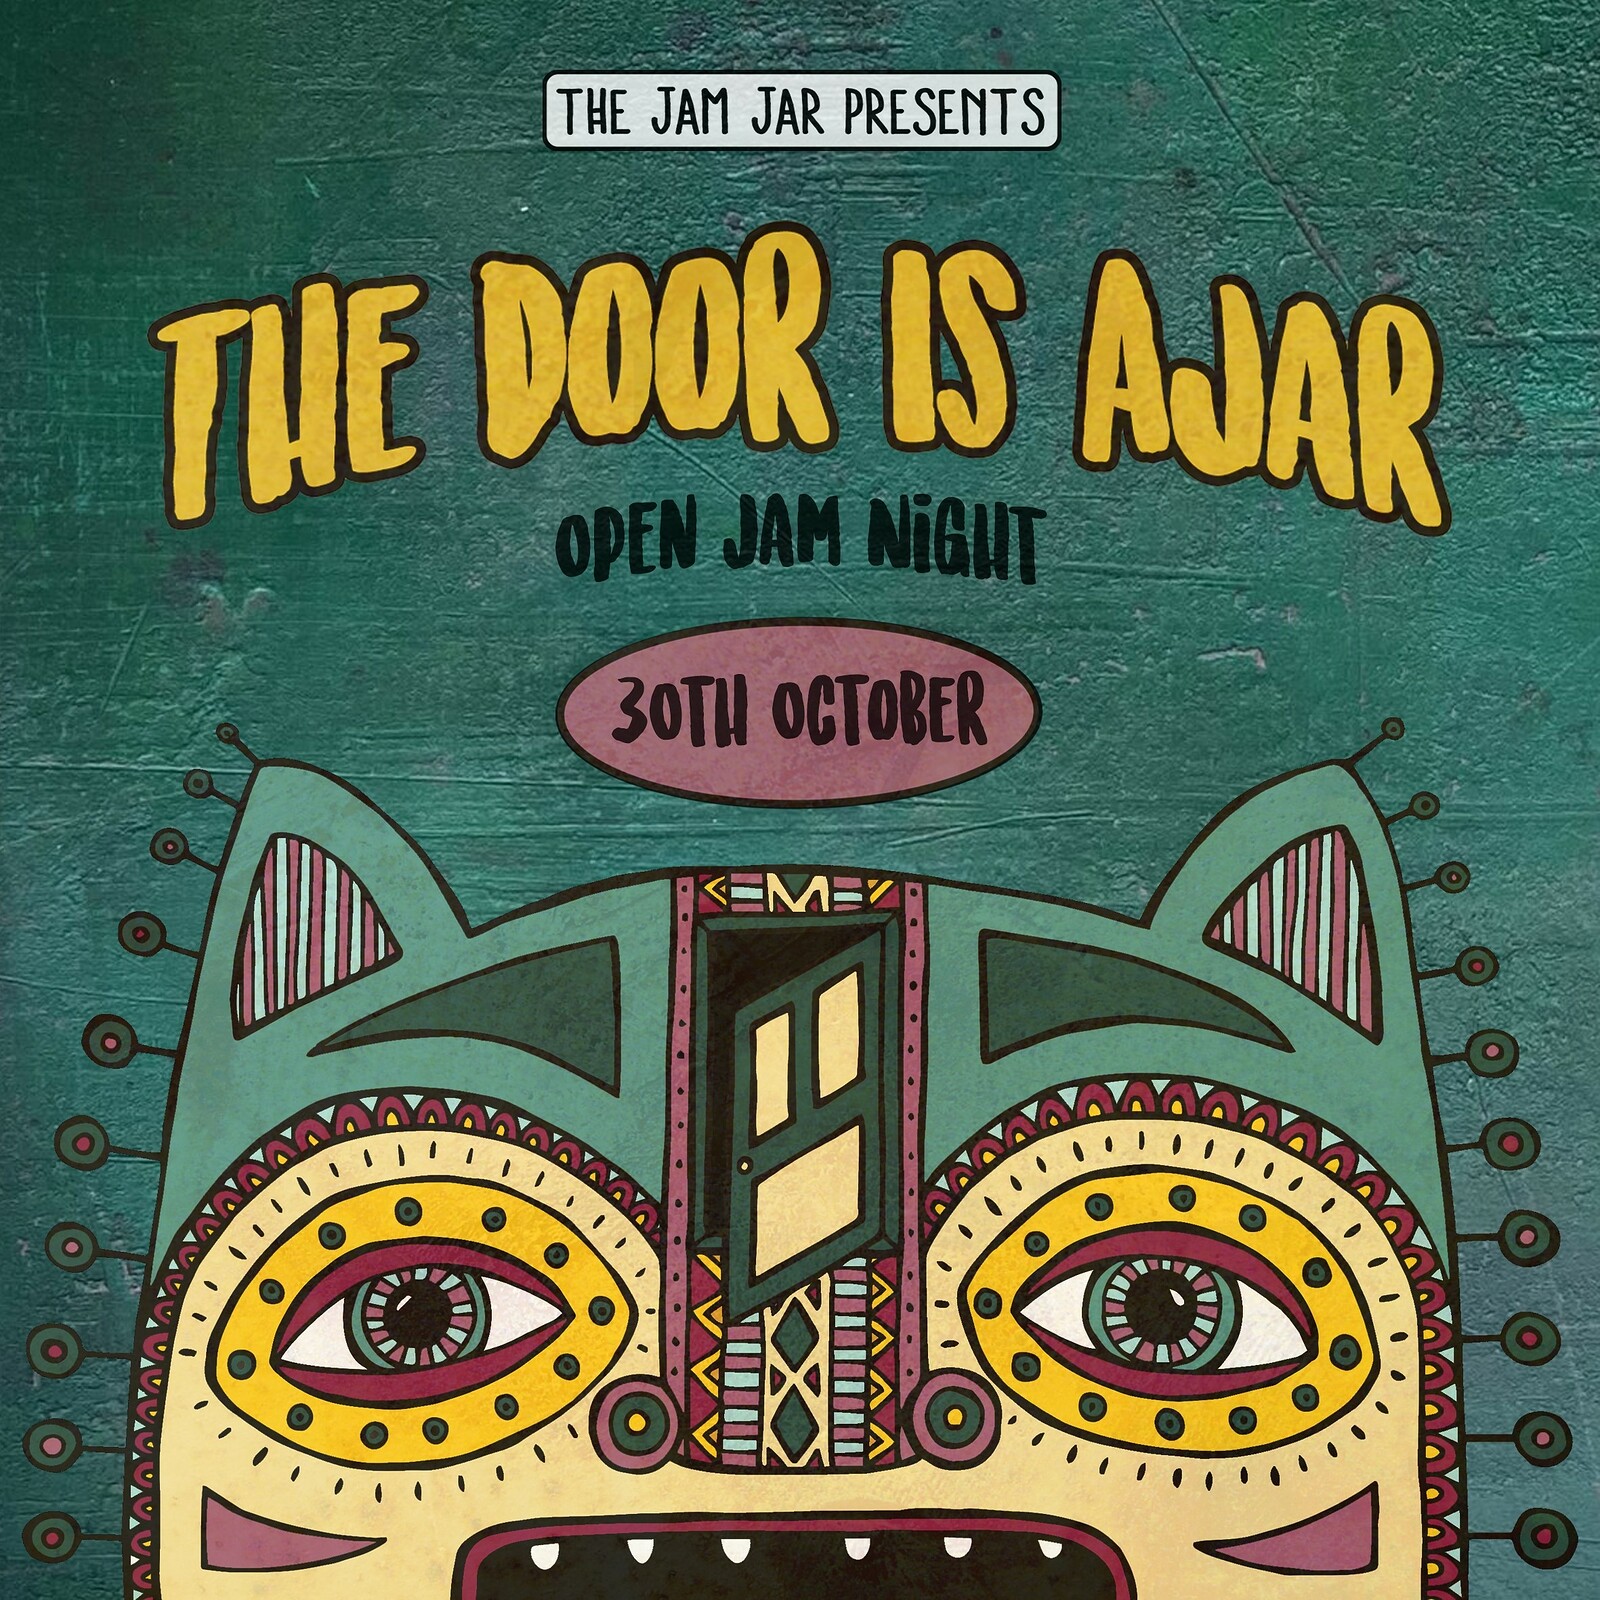 The Door Is Ajar at Jam Jar